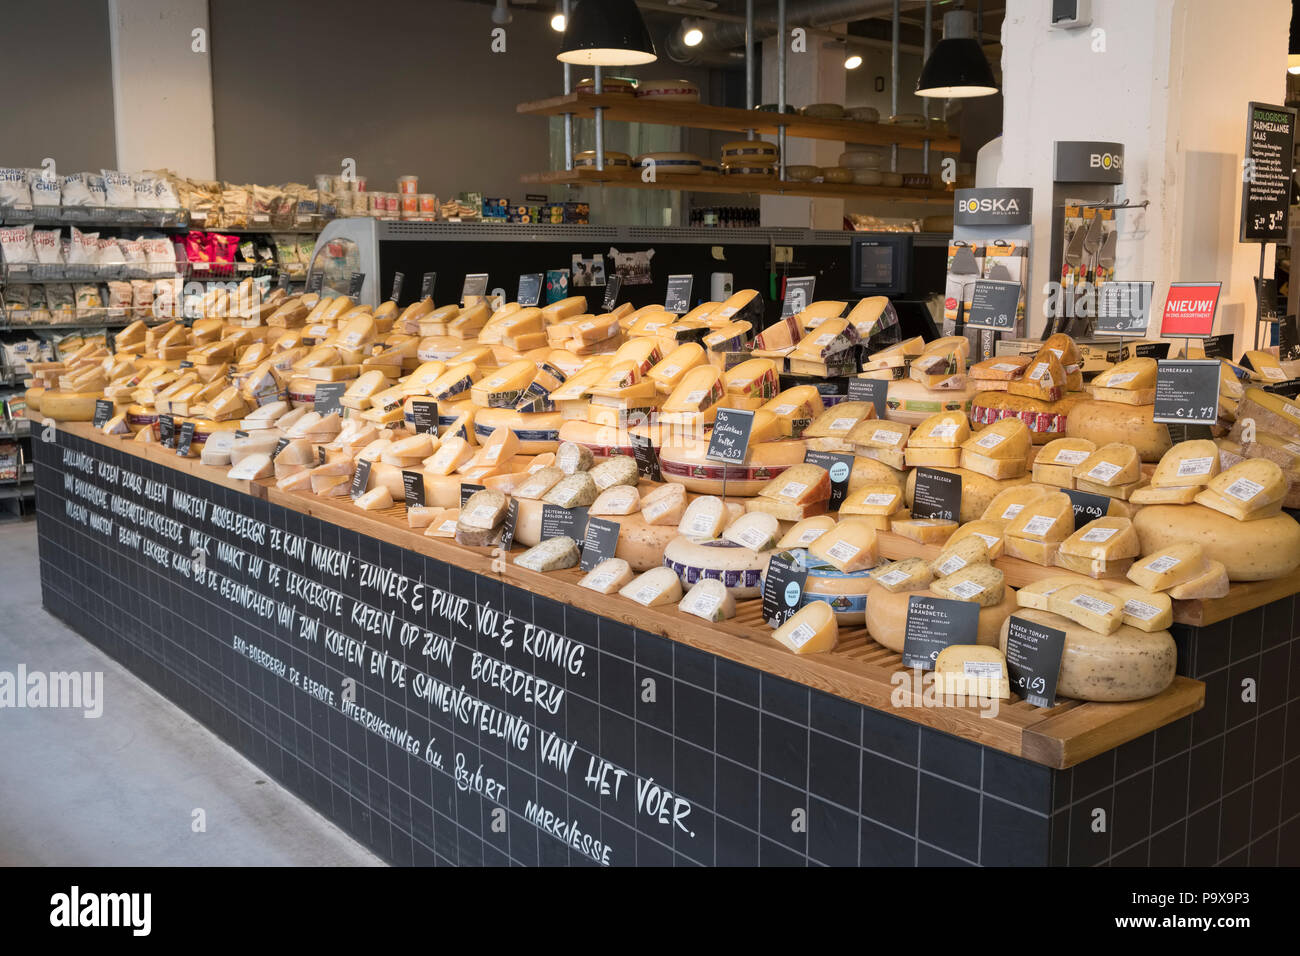 Formaggi sul display in un negozio di formaggi in Amsterdam, Paesi Bassi, Olanda, Europa Foto Stock